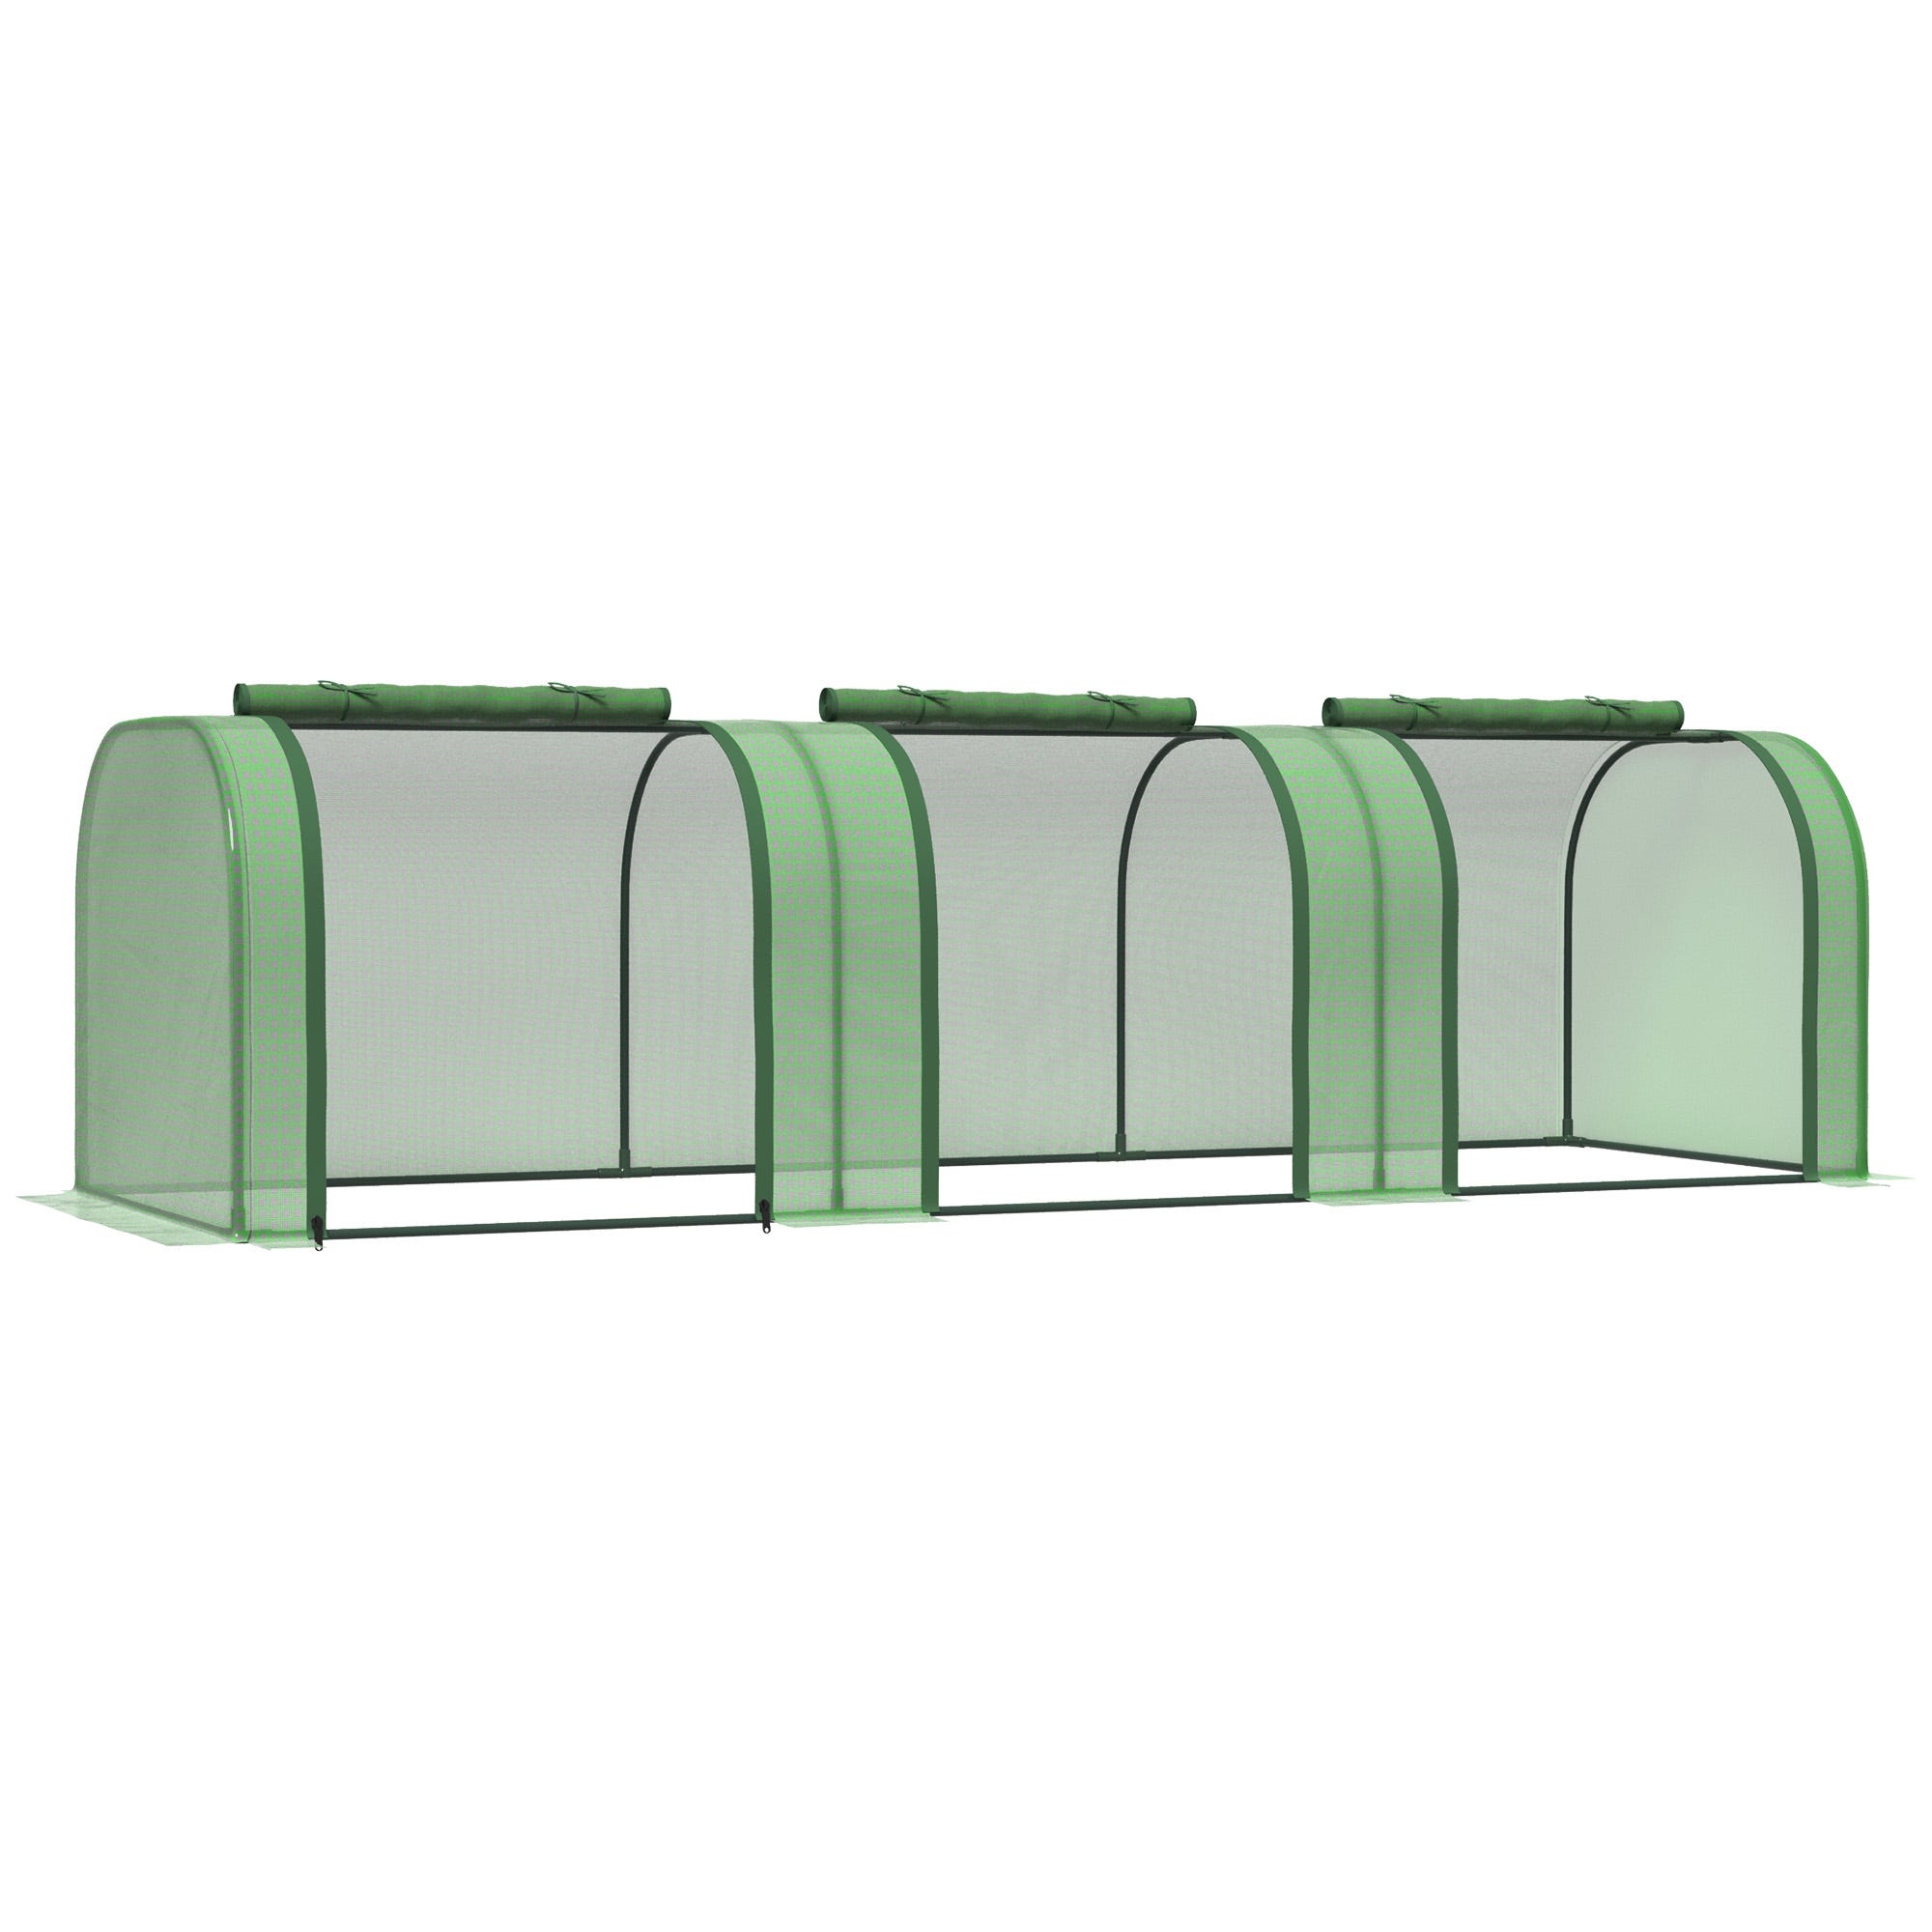 Mini invernadero Outsunny verde 180x90x90 cm cubierta pe acero_845-204GN